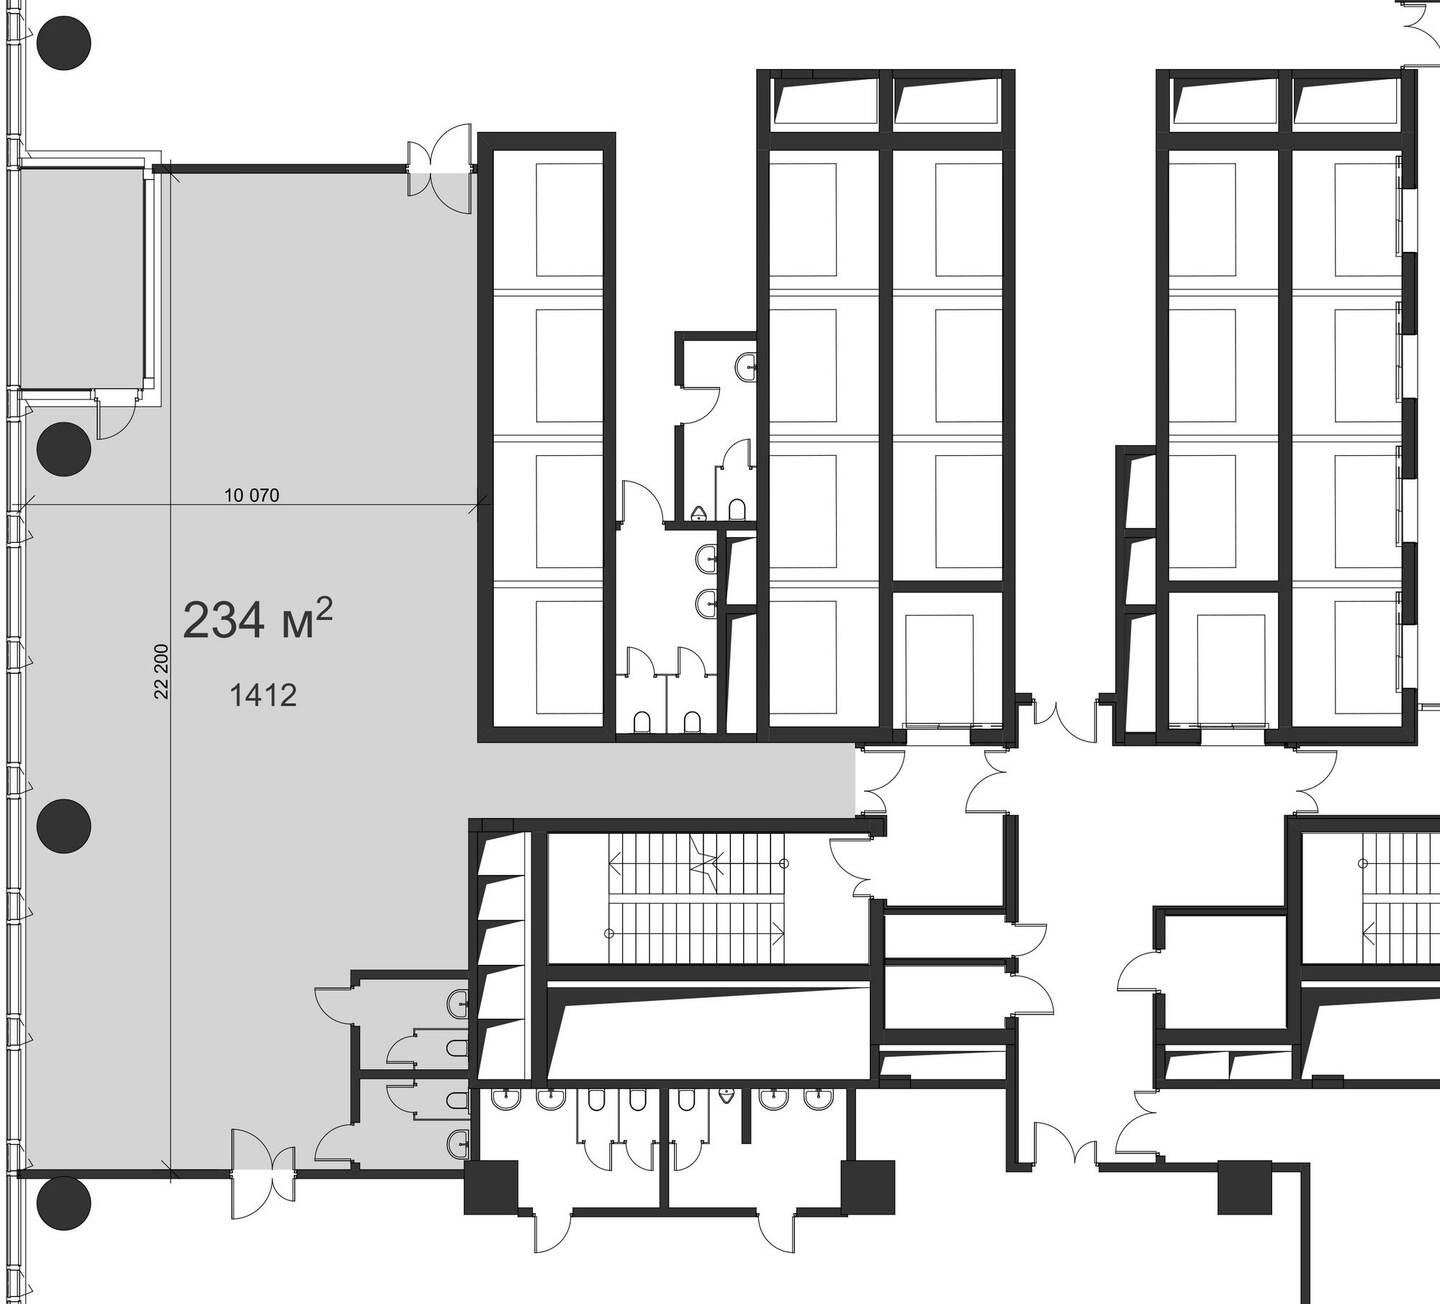 Планировка квартиры в ЖК "Деловые небоскрёбы iCITY (АйСити)" - фотография 3